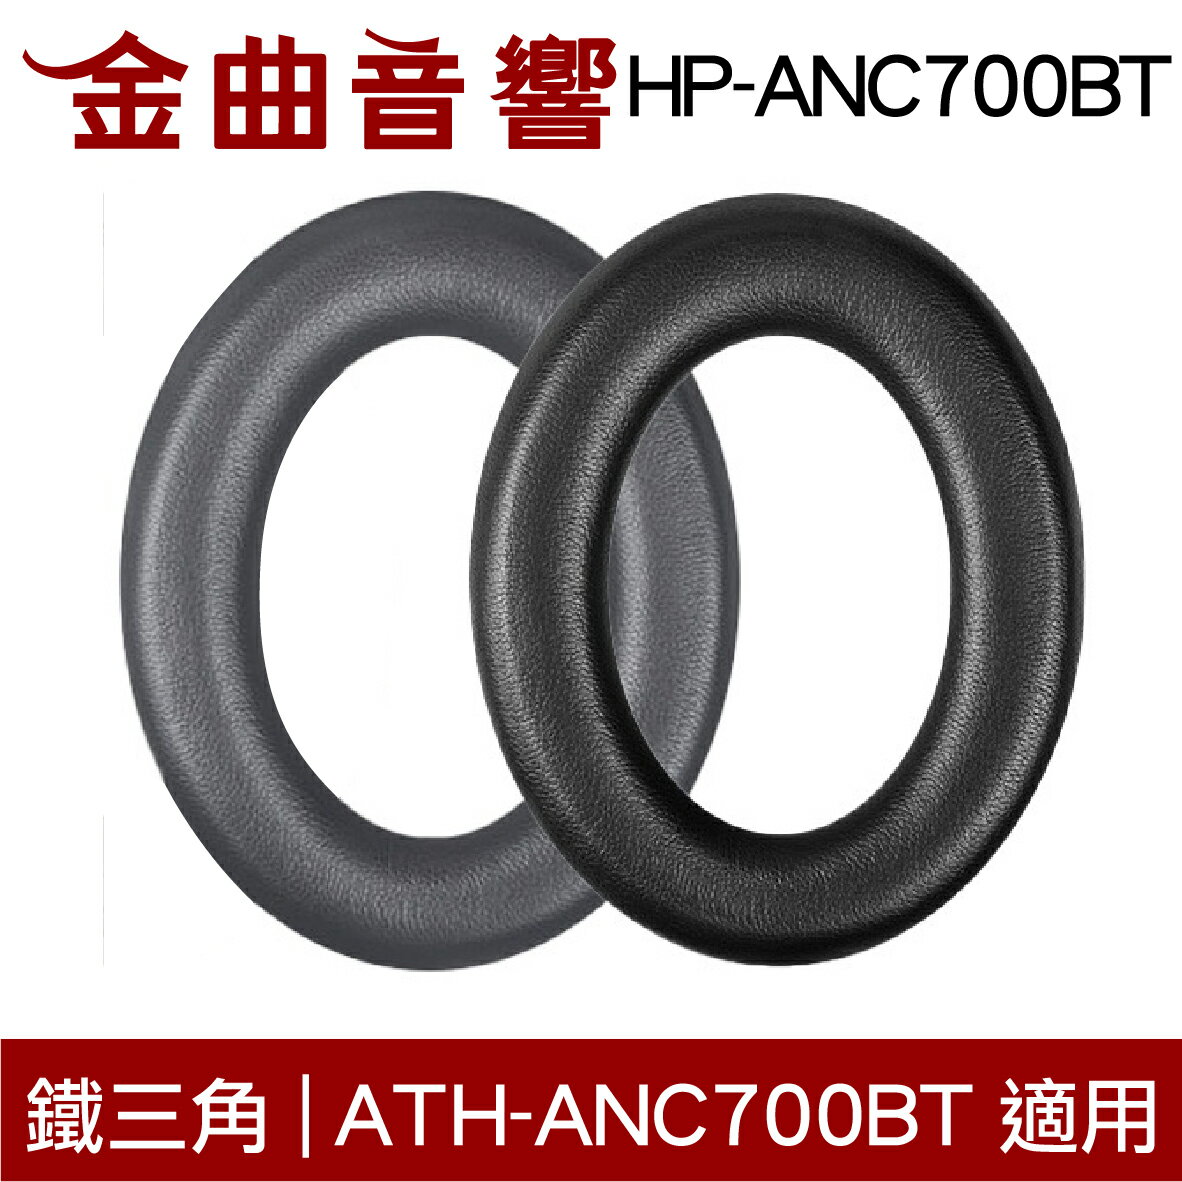 鐵三角 HP-ANC700BT 替換耳罩 一對 ATH-ANC700BT 適用 | 金曲音響